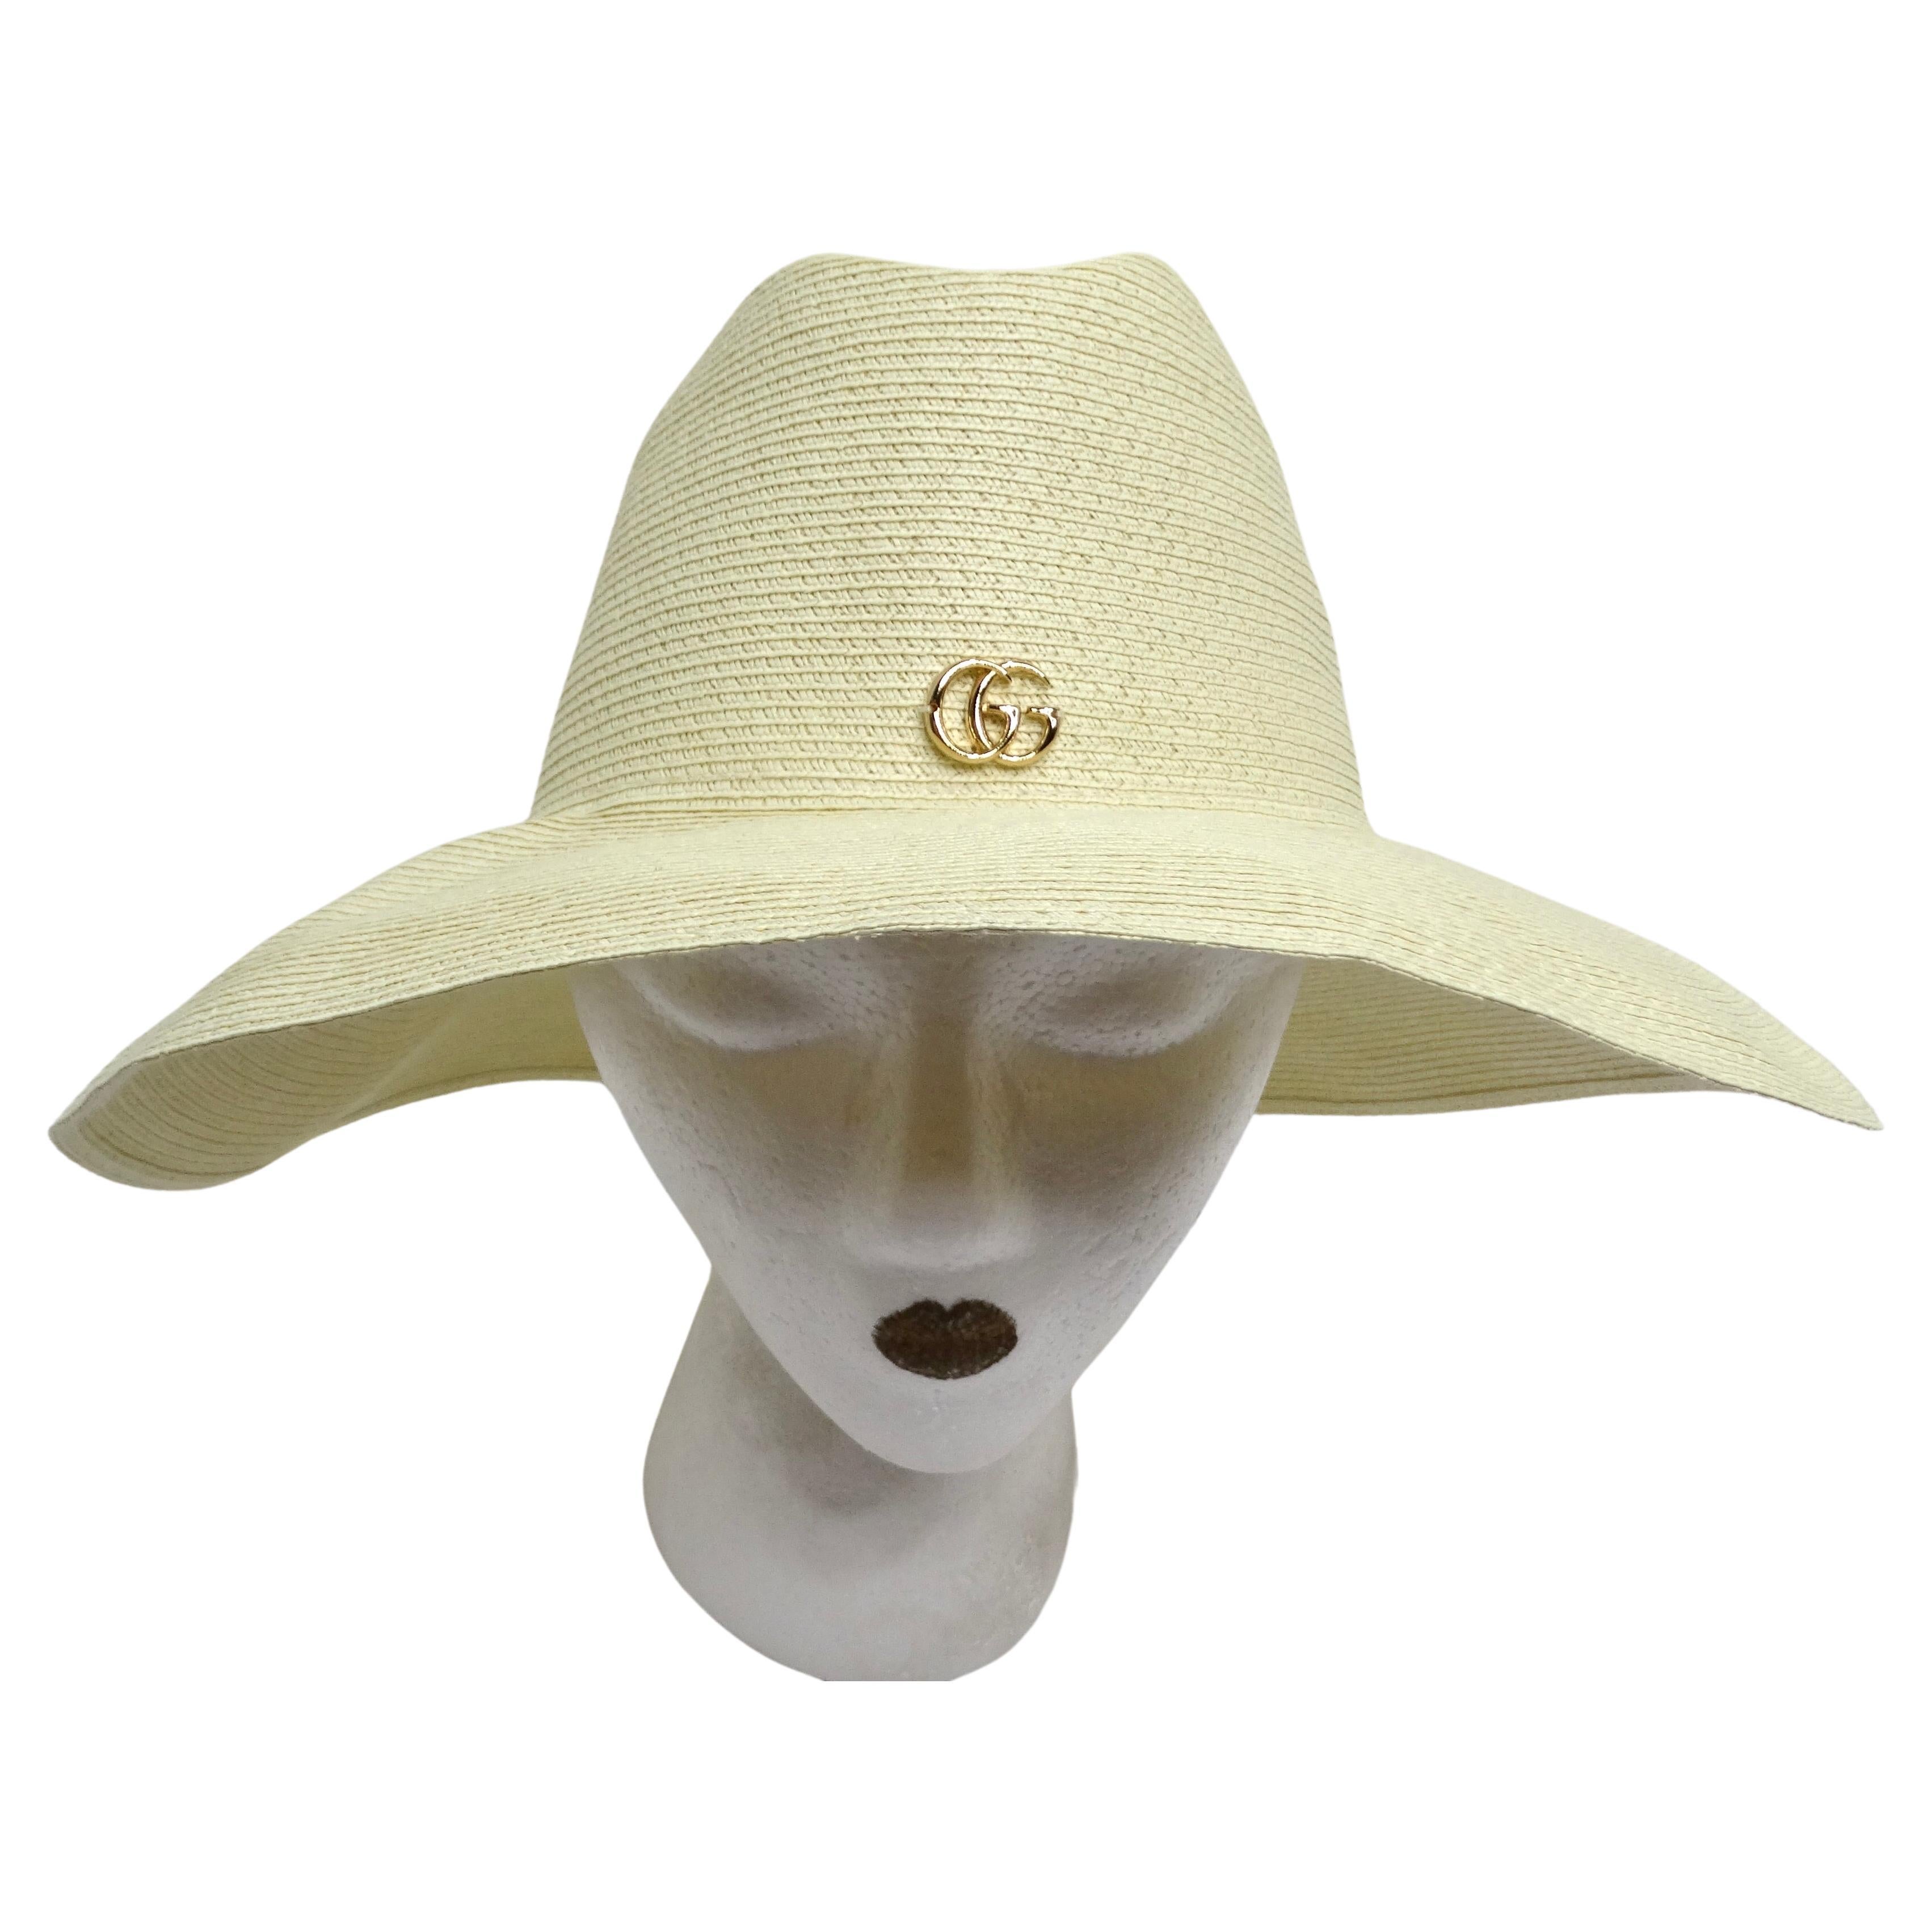 Auth. Brand New Chanel Wide Brim Raffia Summer Hat Sz. M